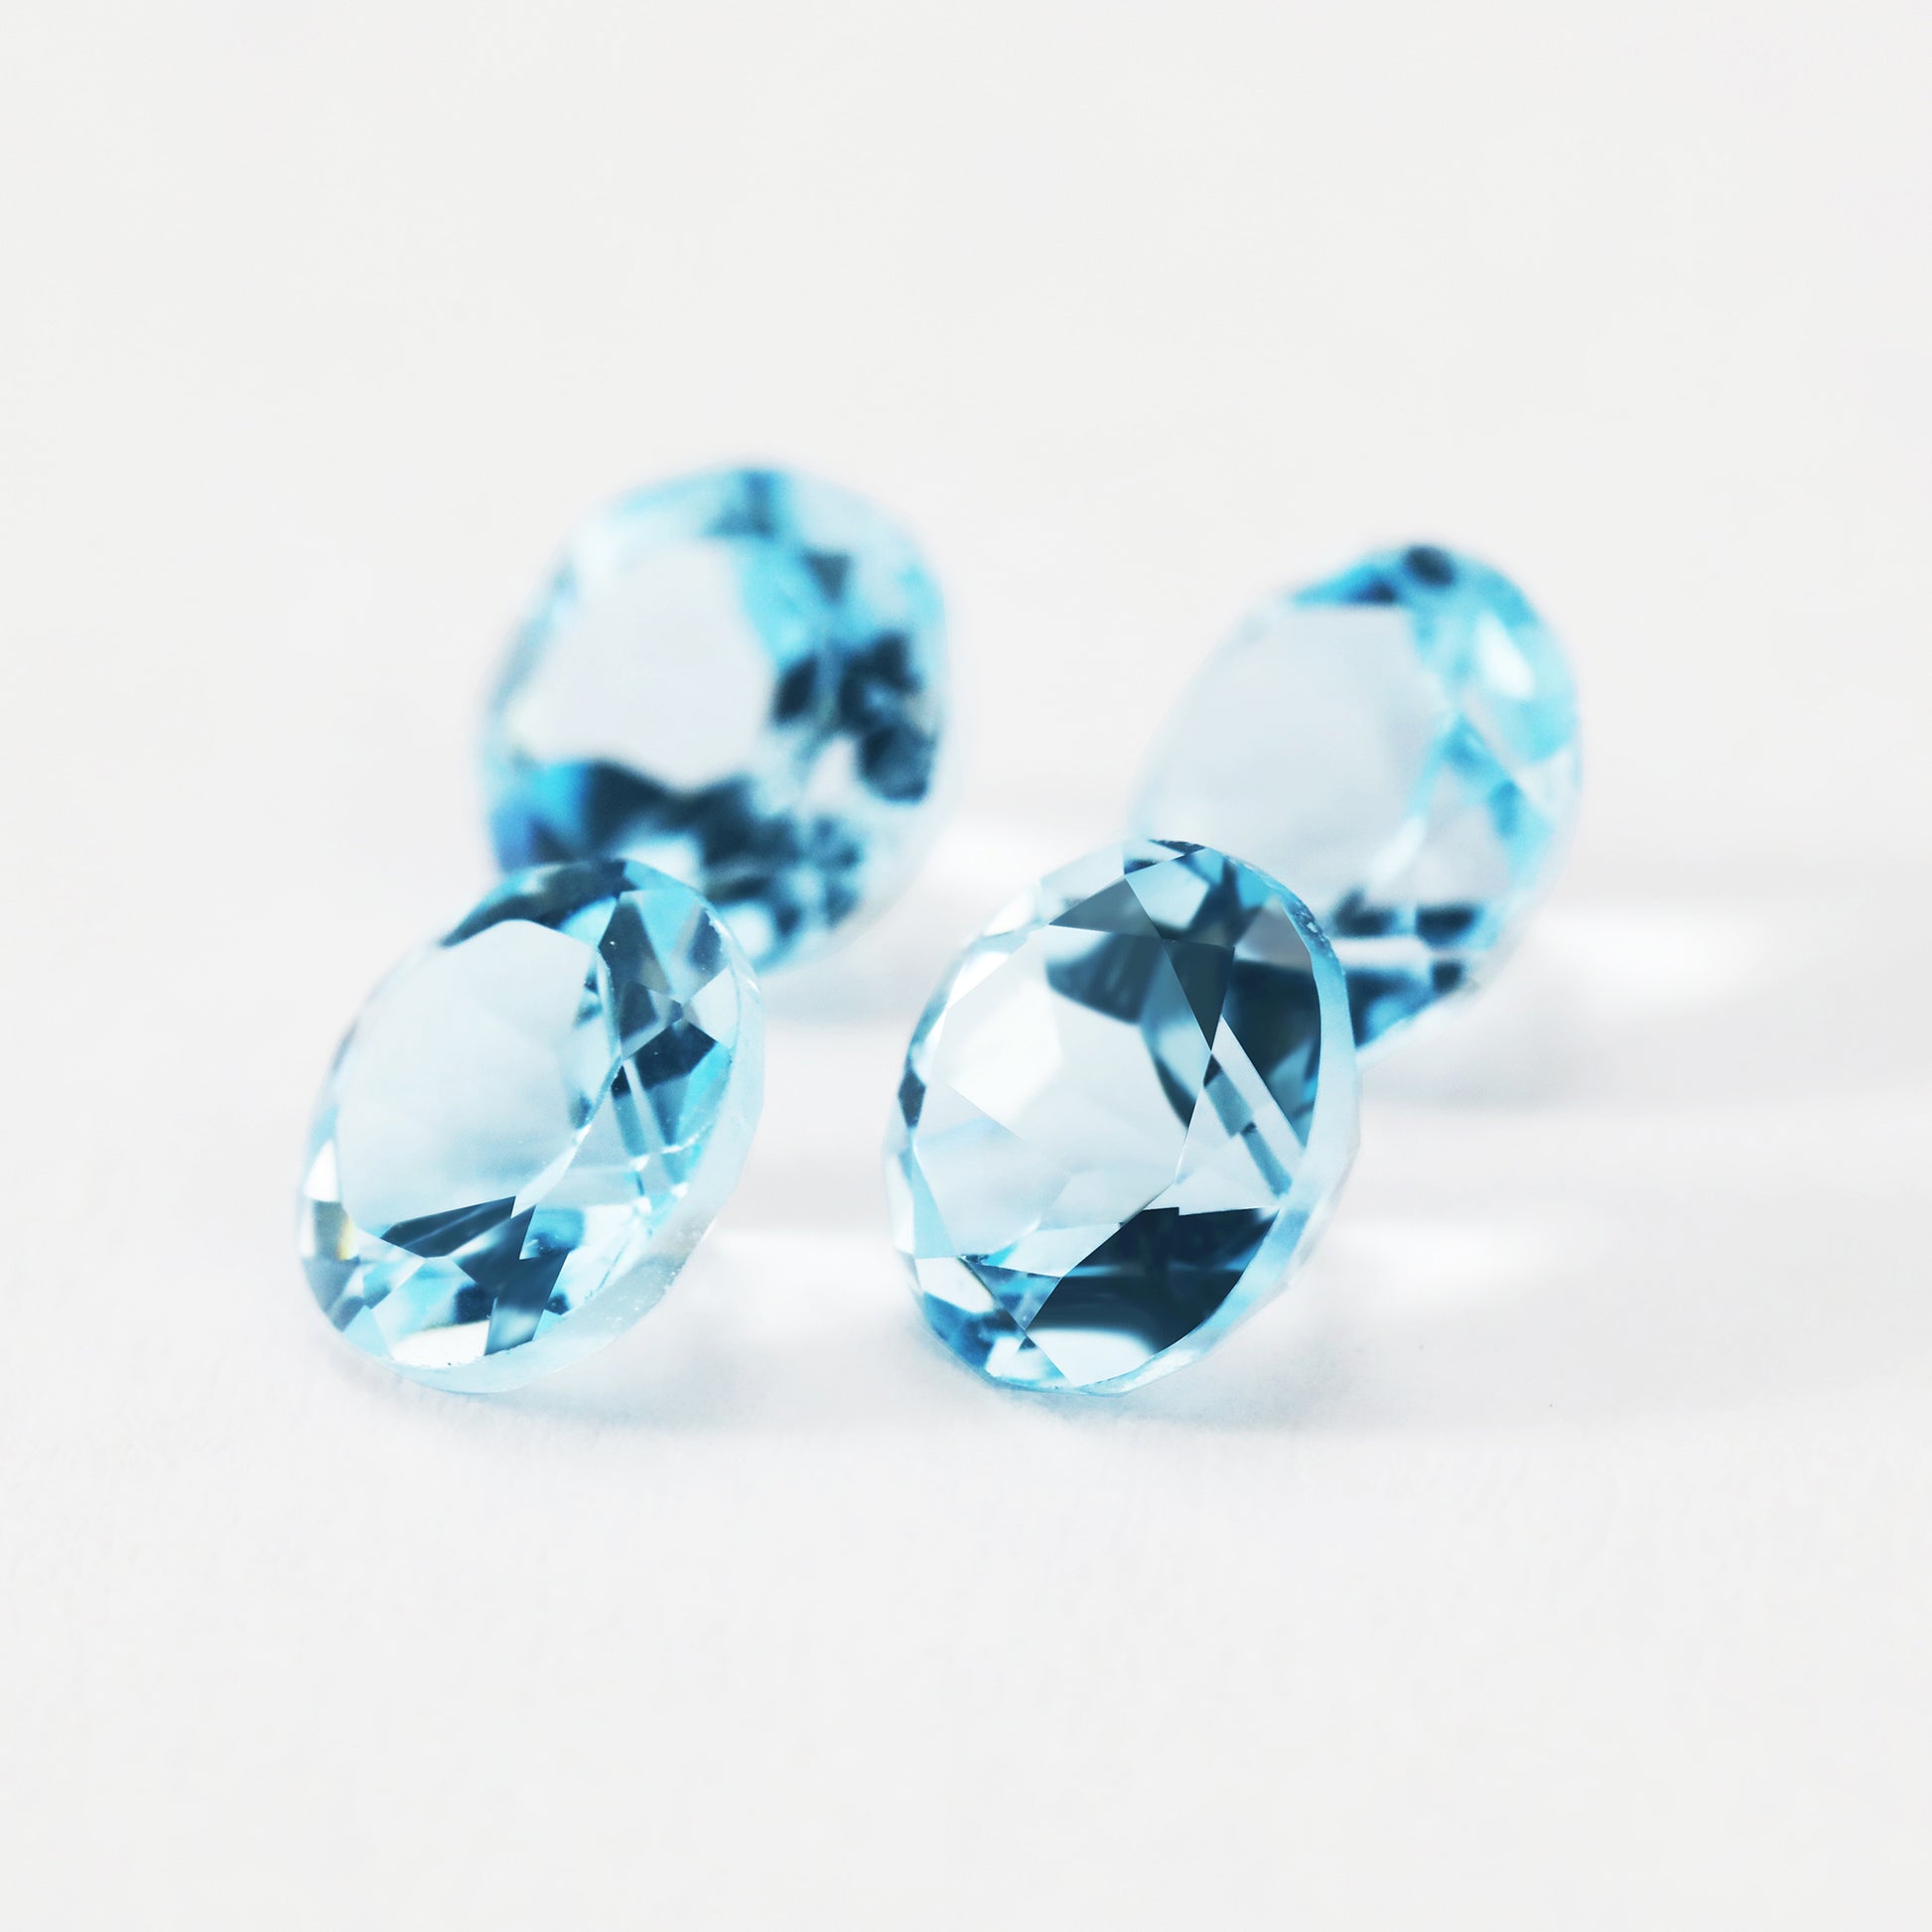 Four round blue sky blue topaz gems.